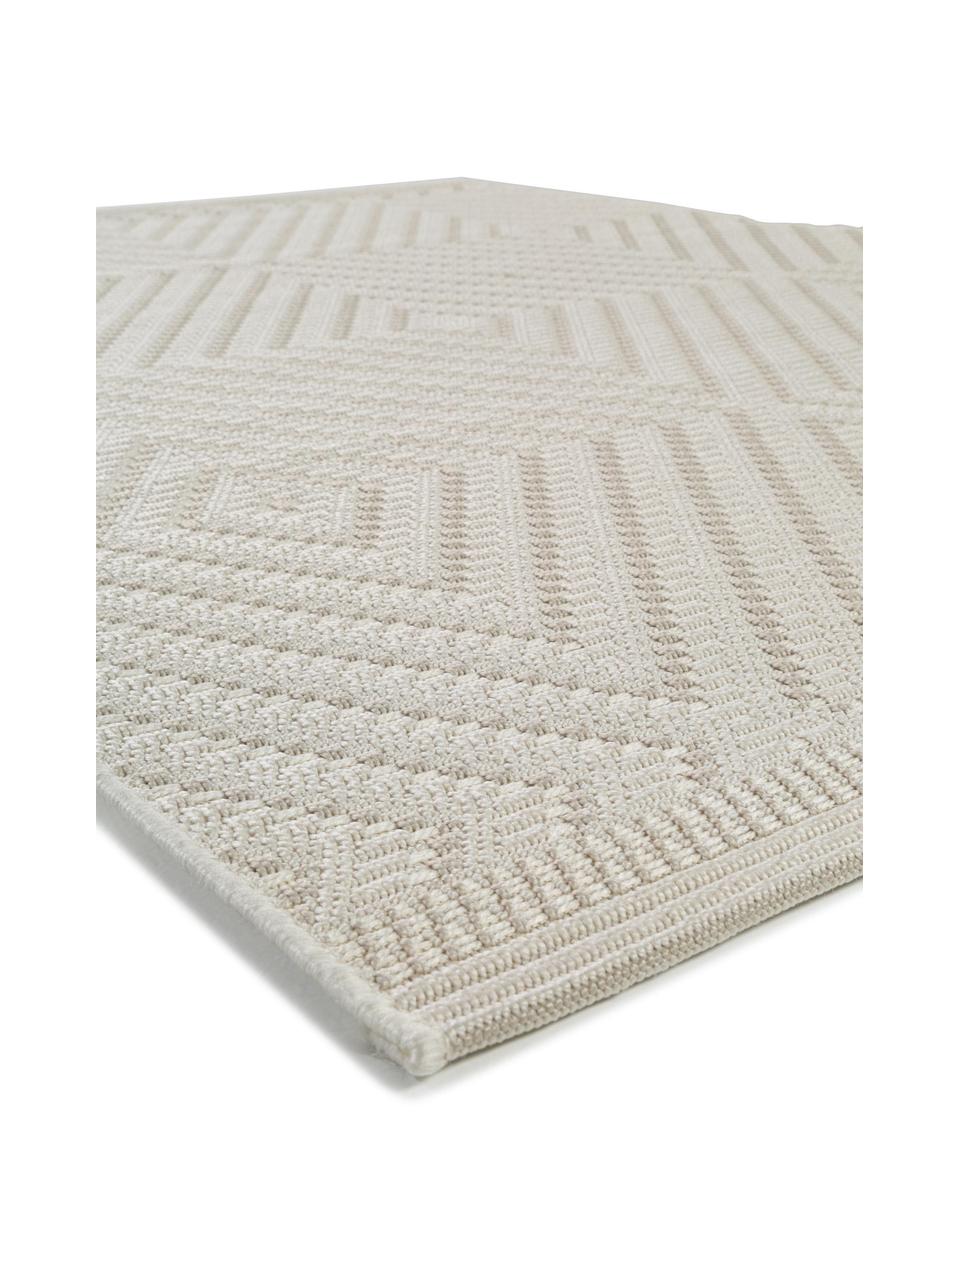 Interiérový/exteriérový koberec Naoto, 100 % polypropylen, Tlumeně bílá, světle béžová, Š 140 cm, D 200 cm (velikost S)